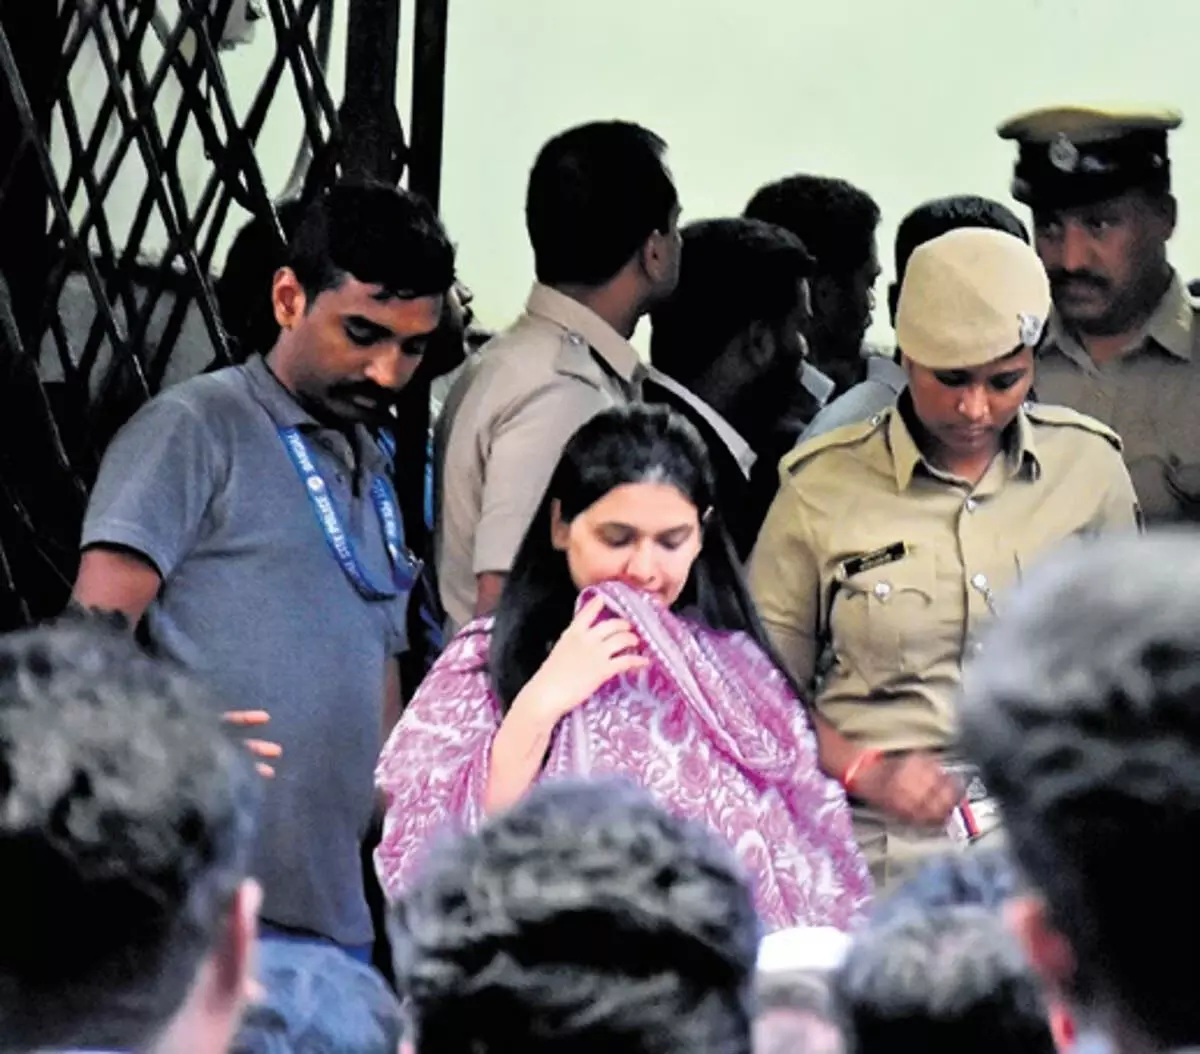 Entertainment: पवित्रा गौड़ा को आवेदन करने की अनुमति देने के लिए महिला पुलिसकर्मी को नोटिस जारी किया गया